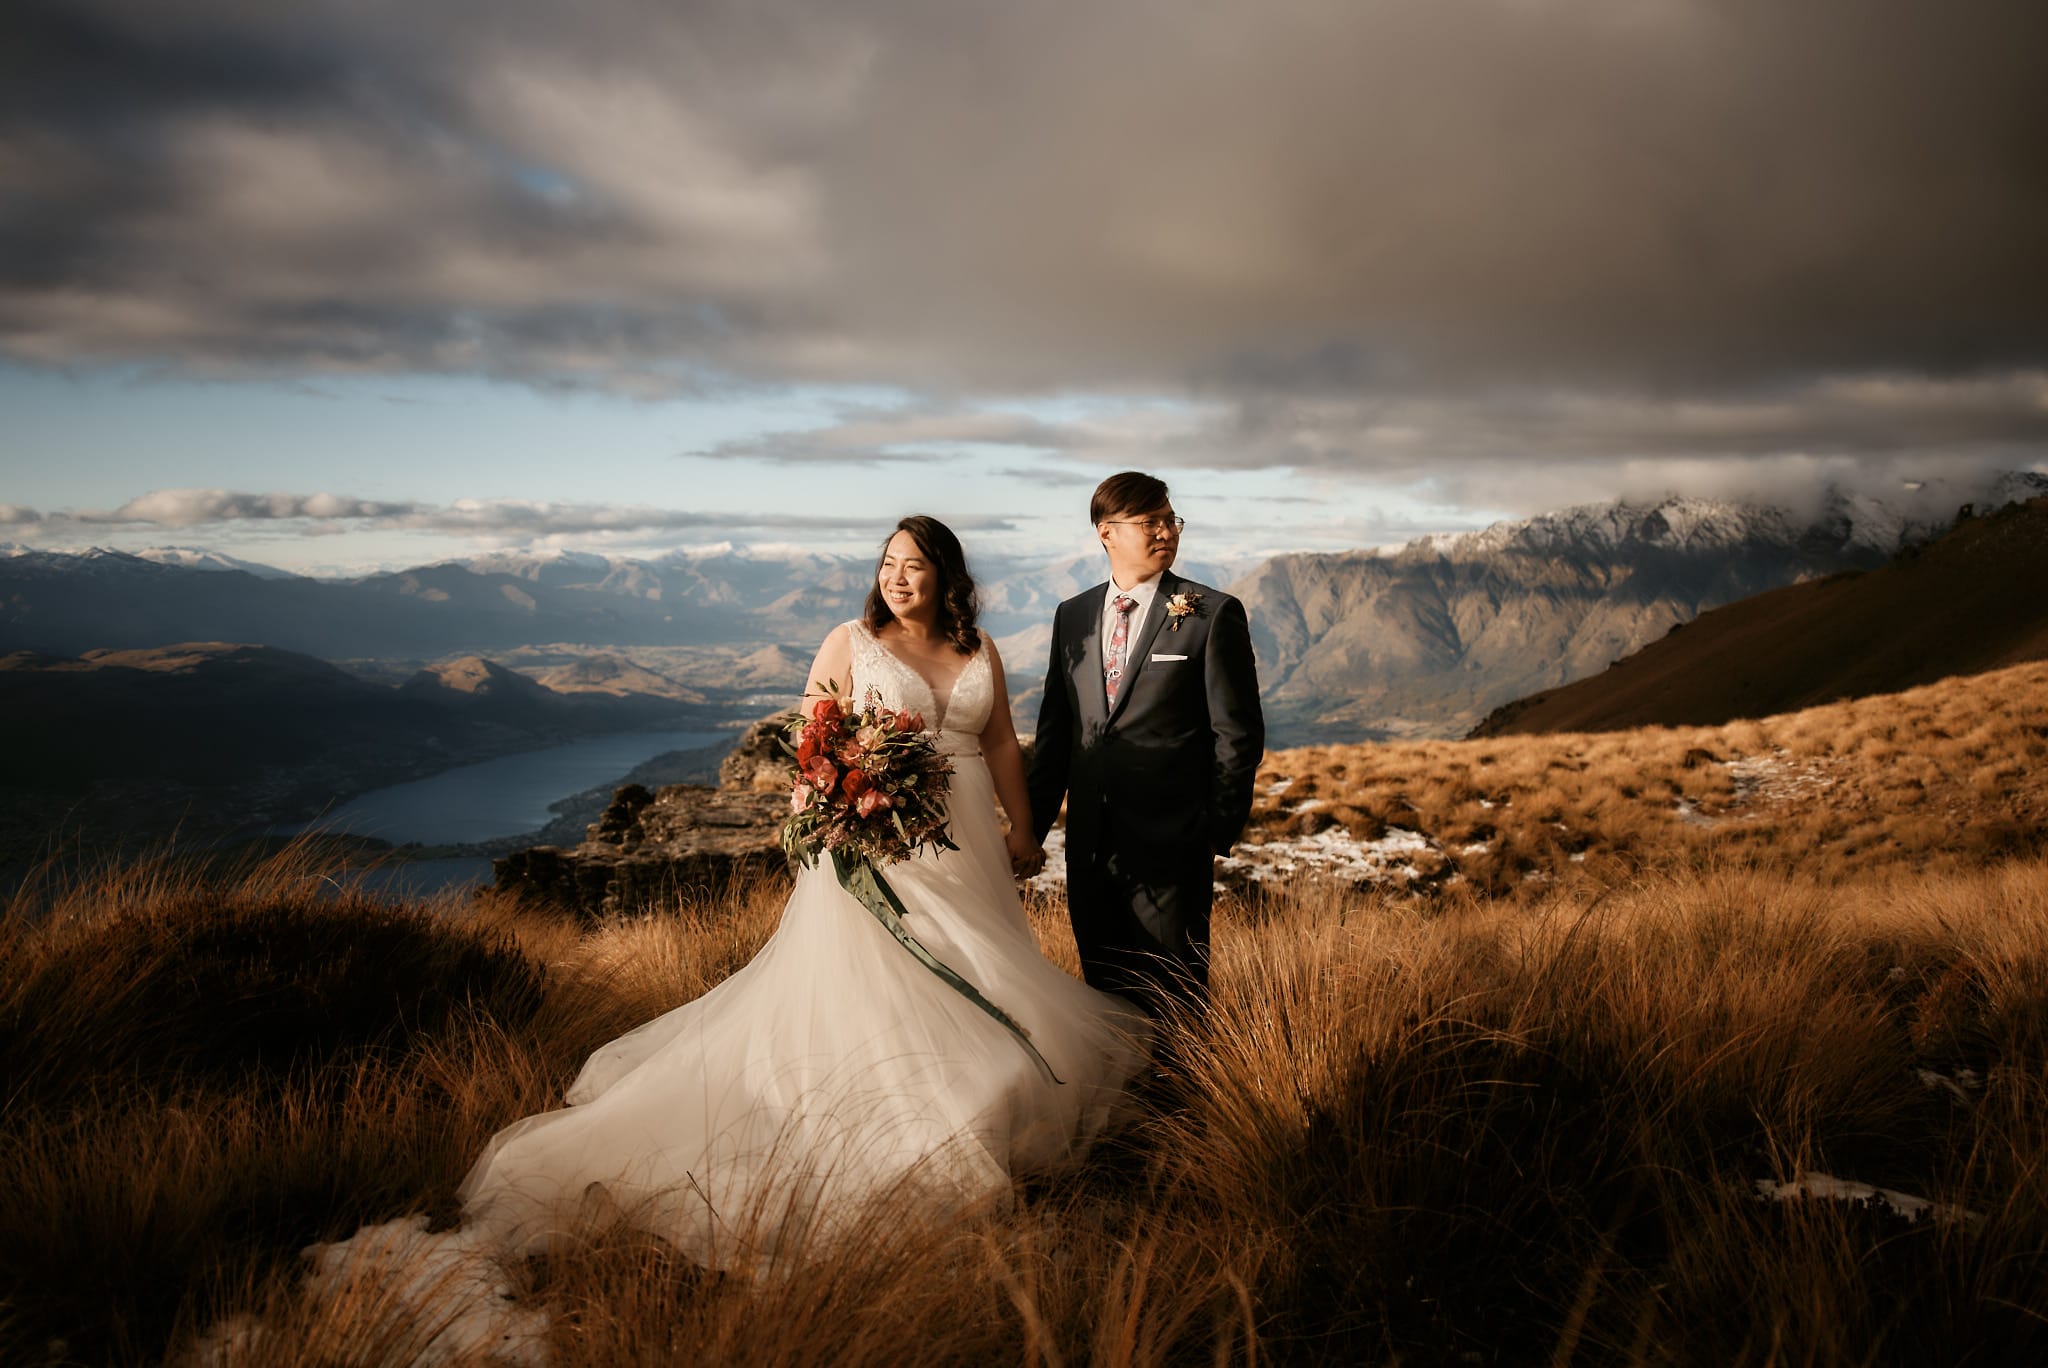 Ana & Jao's Queenstown NZ Heli-Wedding Elopement at Cecil Peak